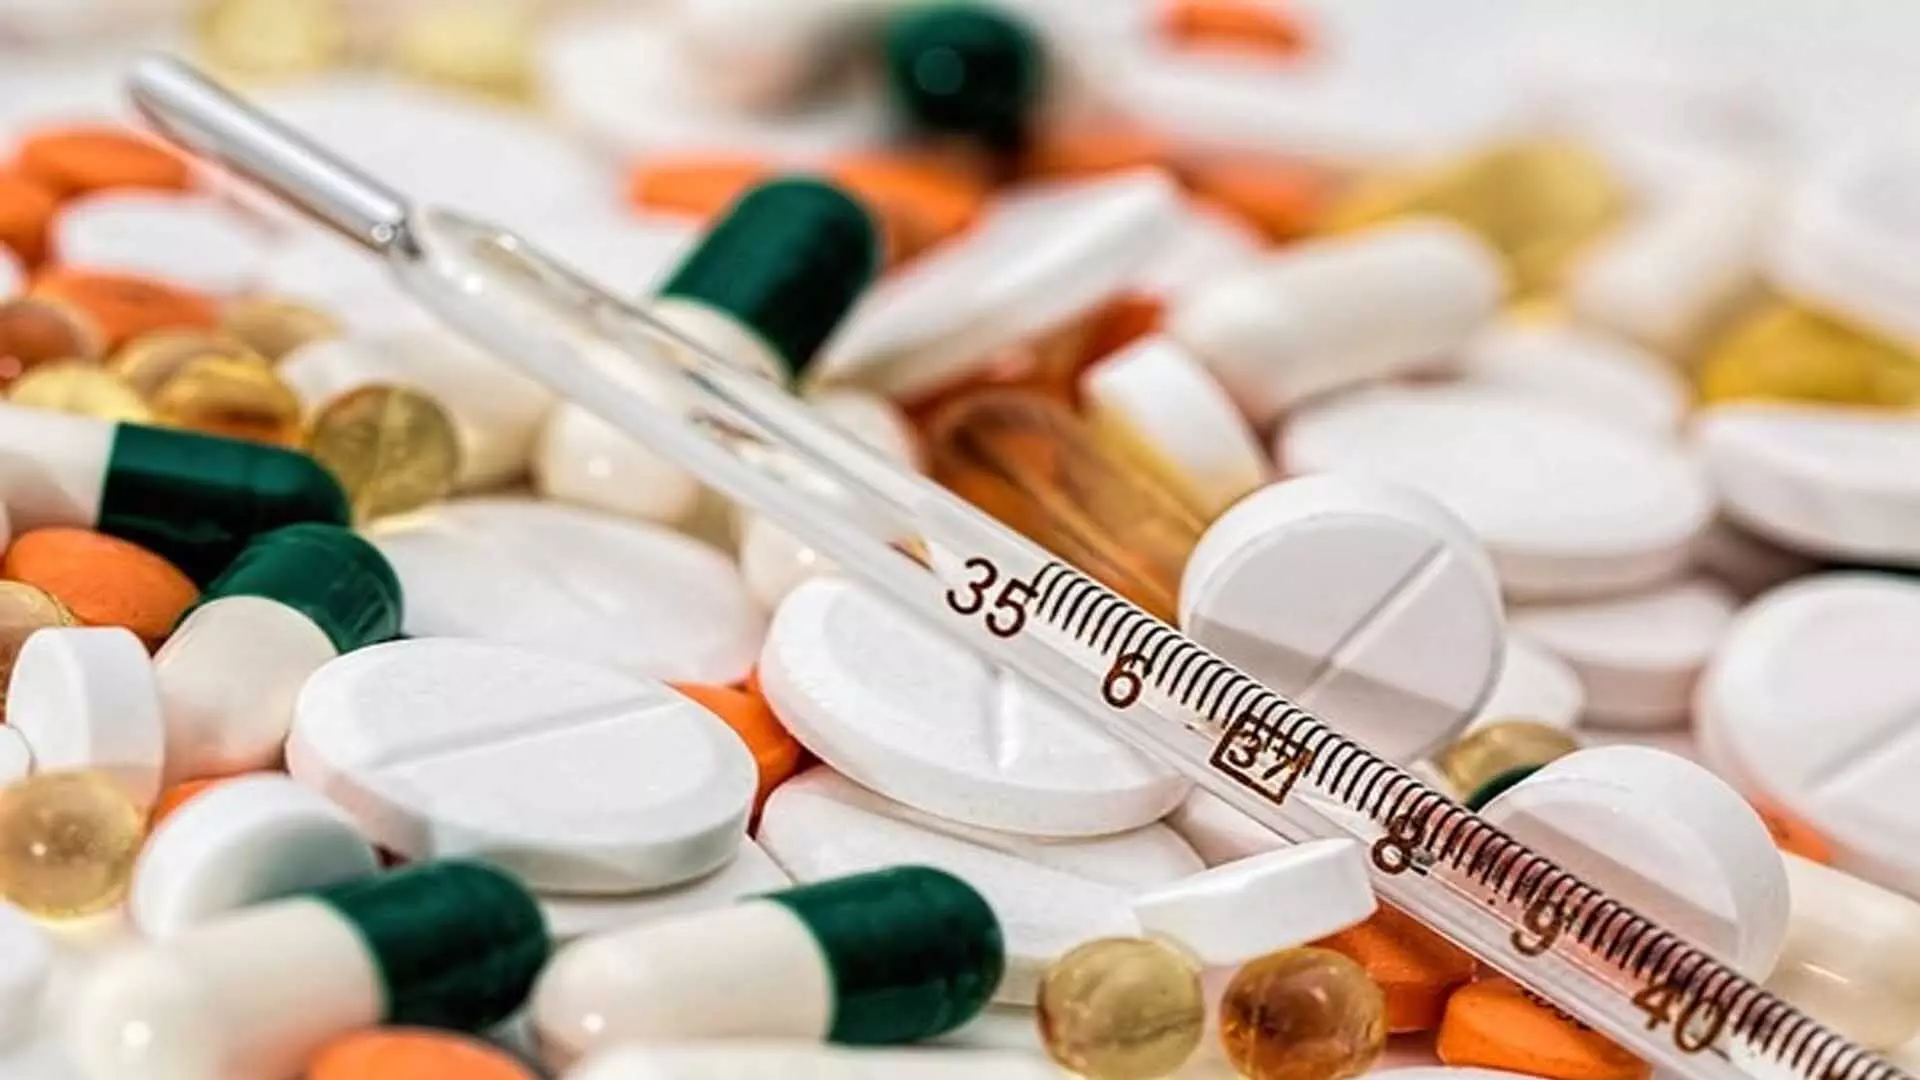 Telangana: डीसीए ने 2 स्थानों पर छापे मारे, अवैध रूप से स्टॉक की गई और अधिक कीमत वाली दवाएं जब्त कीं